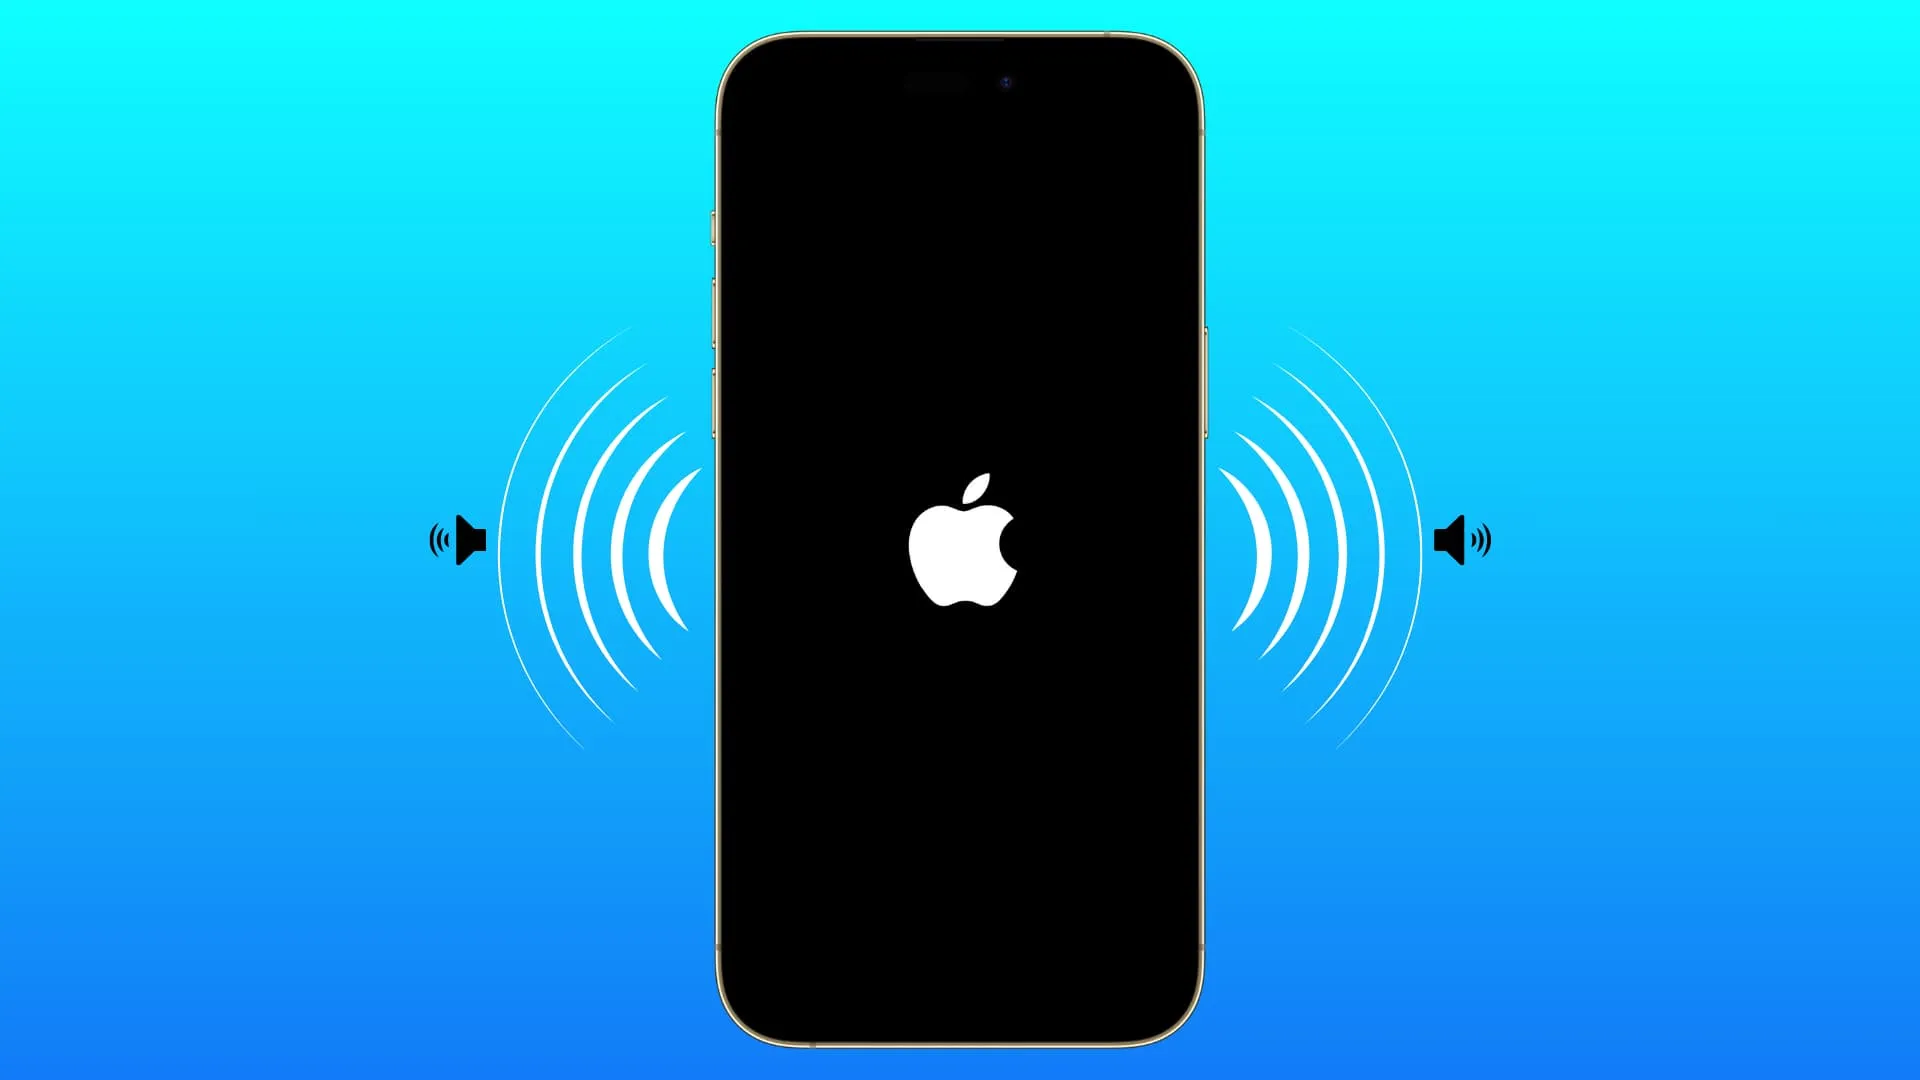 Komposition, die den Einschaltton des iPhones zeigt, wenn es auf dem Apple-Logo-Bildschirm angezeigt wird